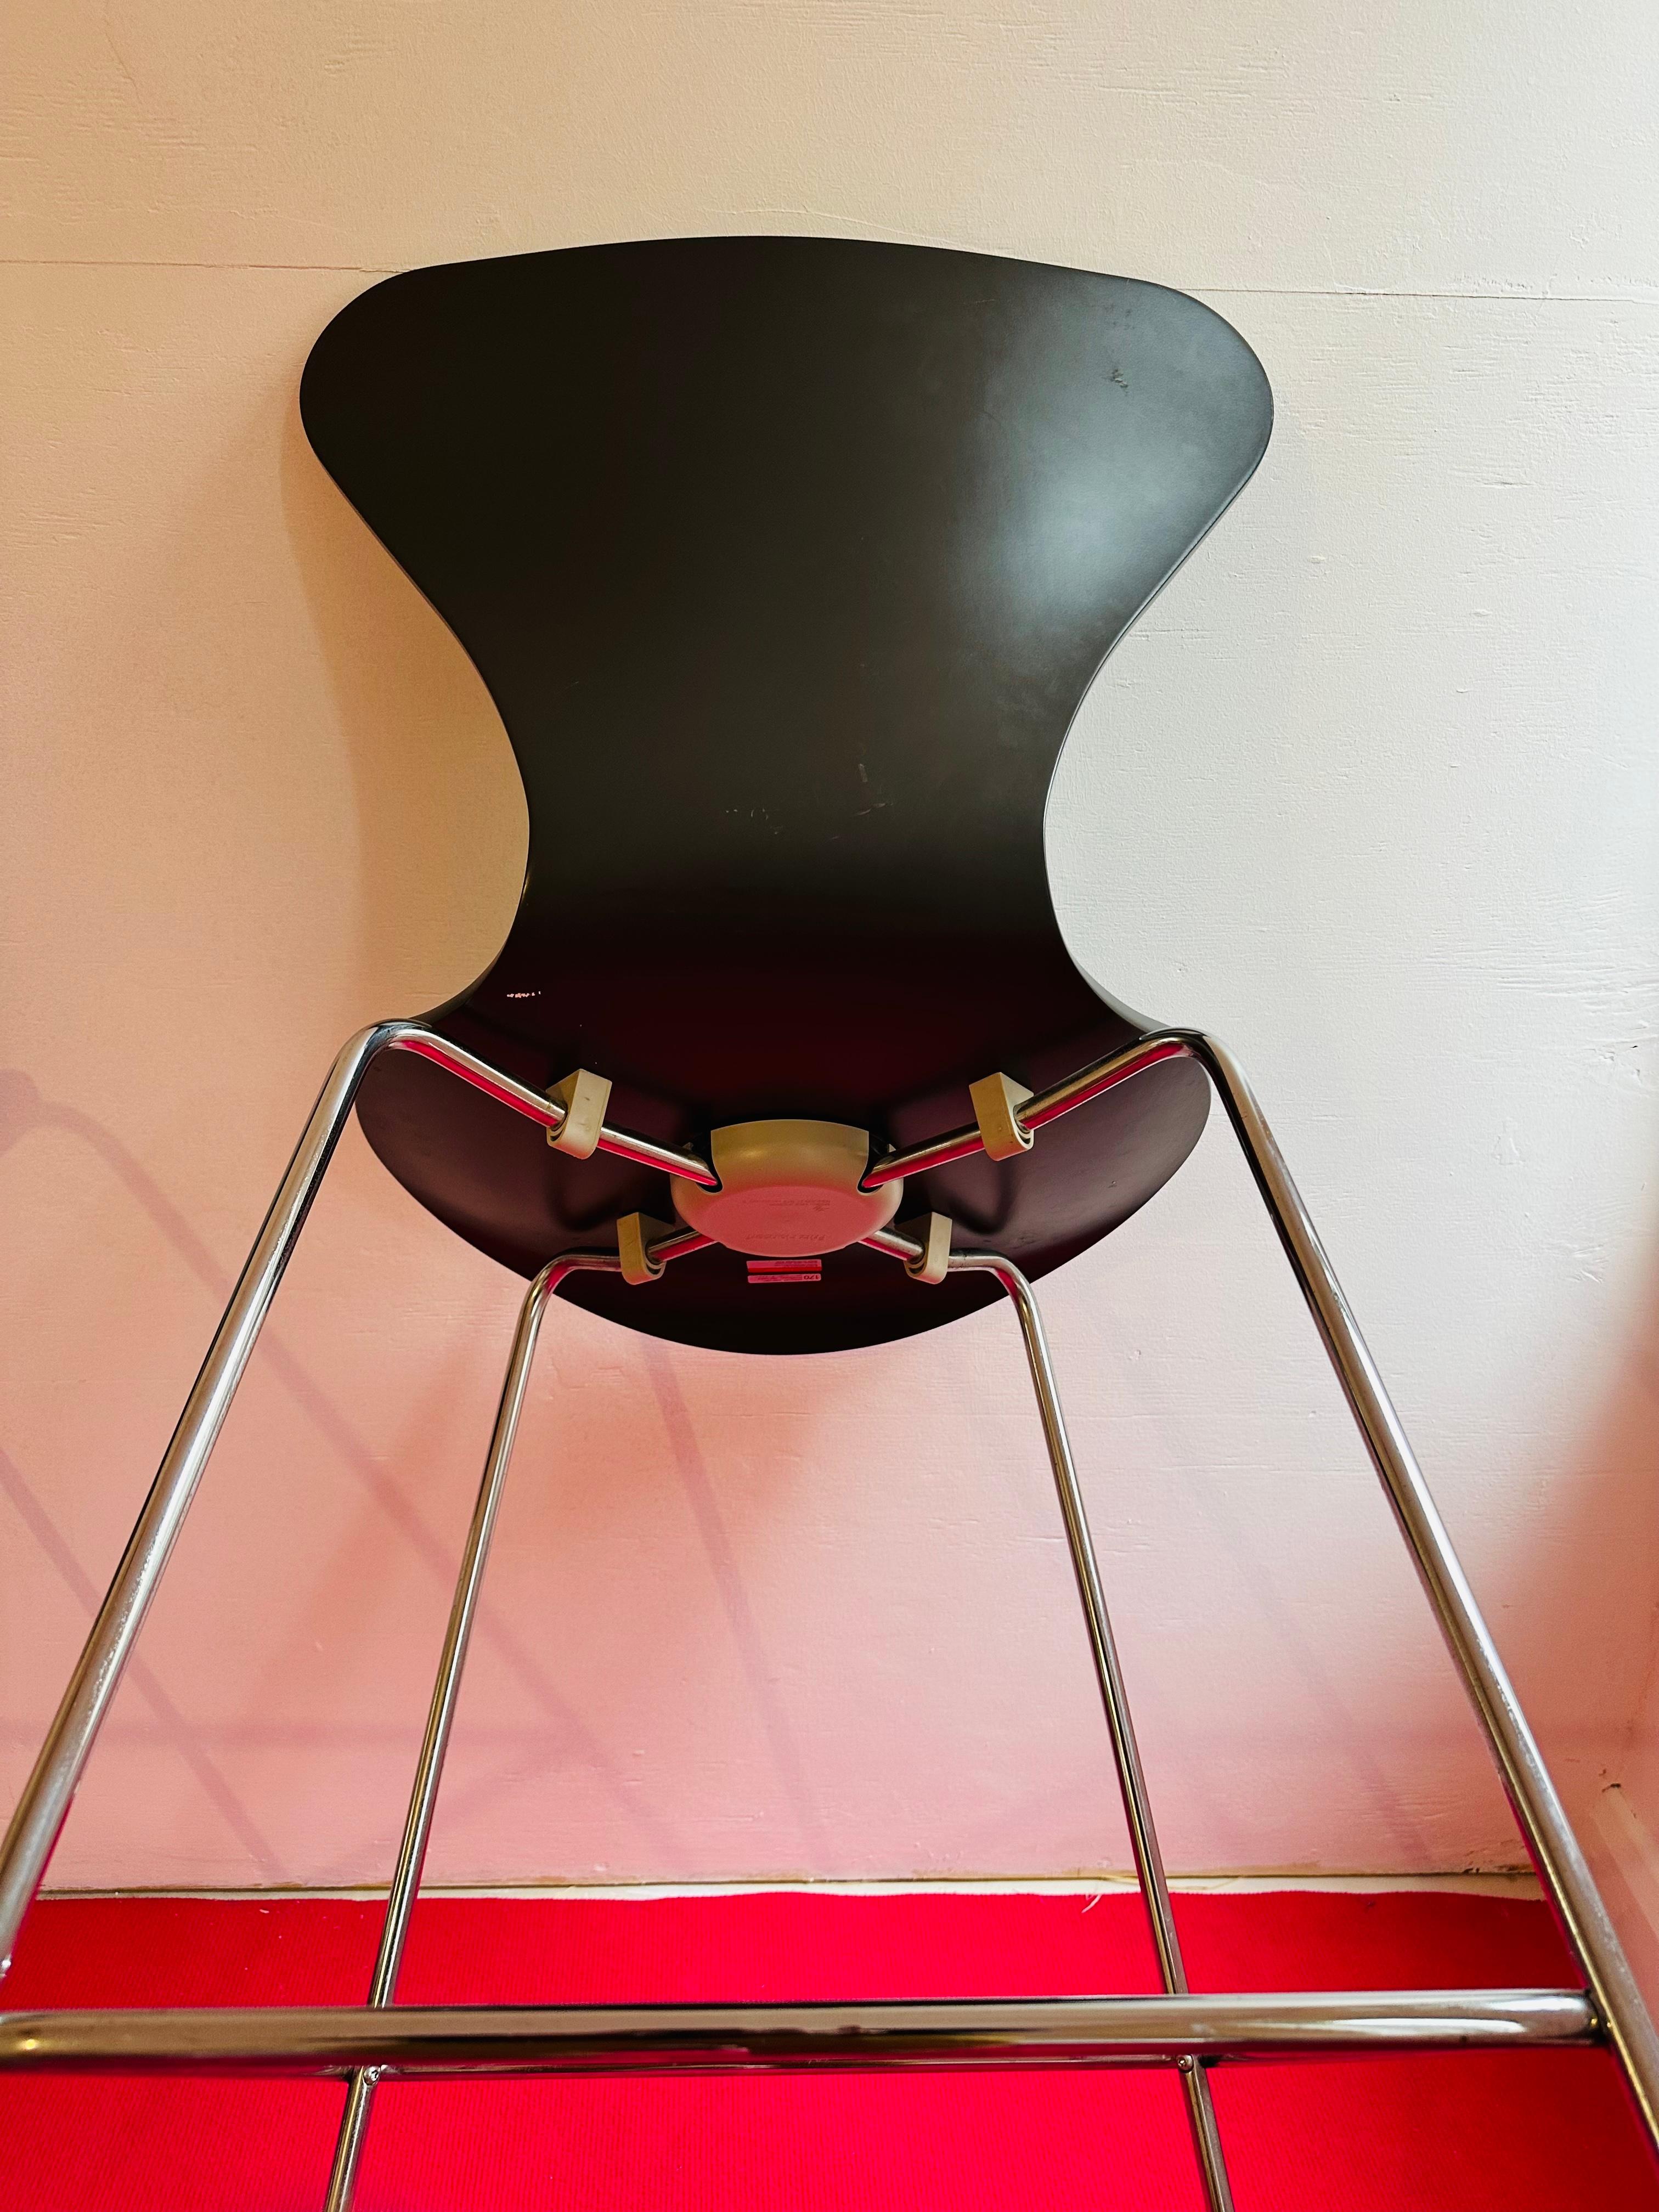 Ein Paar Fritz Hansen Barhocker der Serie 7, entworfen von Arne Jacobsen im Jahr 1955.  Jahr der Herstellung 2005.

Die Sitzfläche ist aus gebogenem, dunkelgrau lackiertem Eschenholz gefertigt, die Beine sind aus verchromtem Stahl.  

In gutem